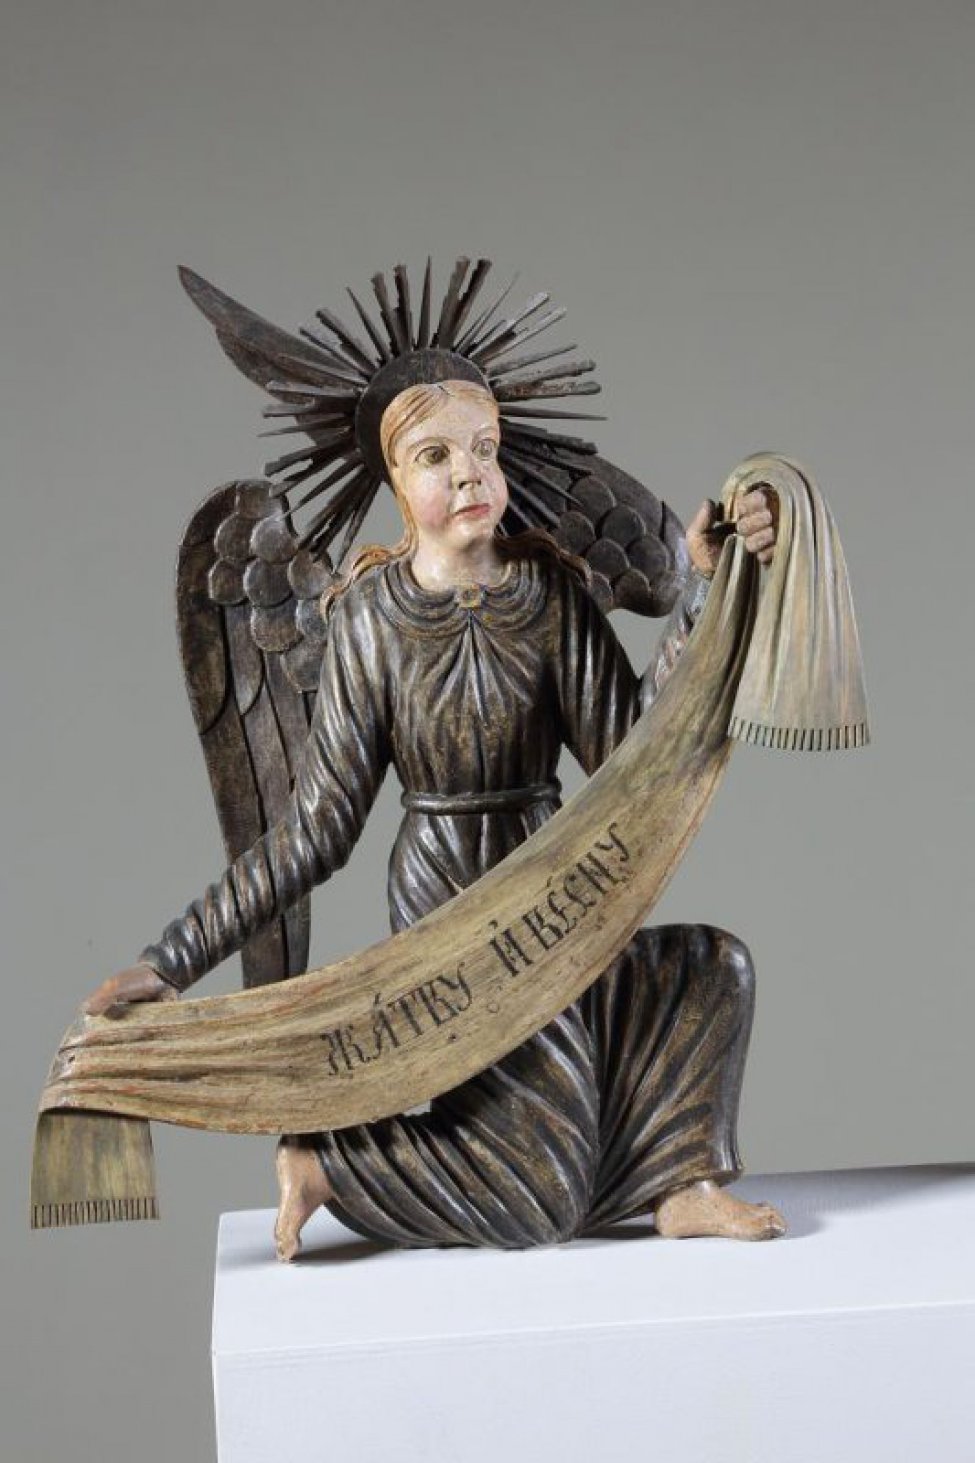 Ангел коленопреклоненный, стоит в нижнем ряду справа. Изображен с поднятой левой рукой и опущенной правой. Одежда посеребрена. Крылья опущенные, посеребренные.